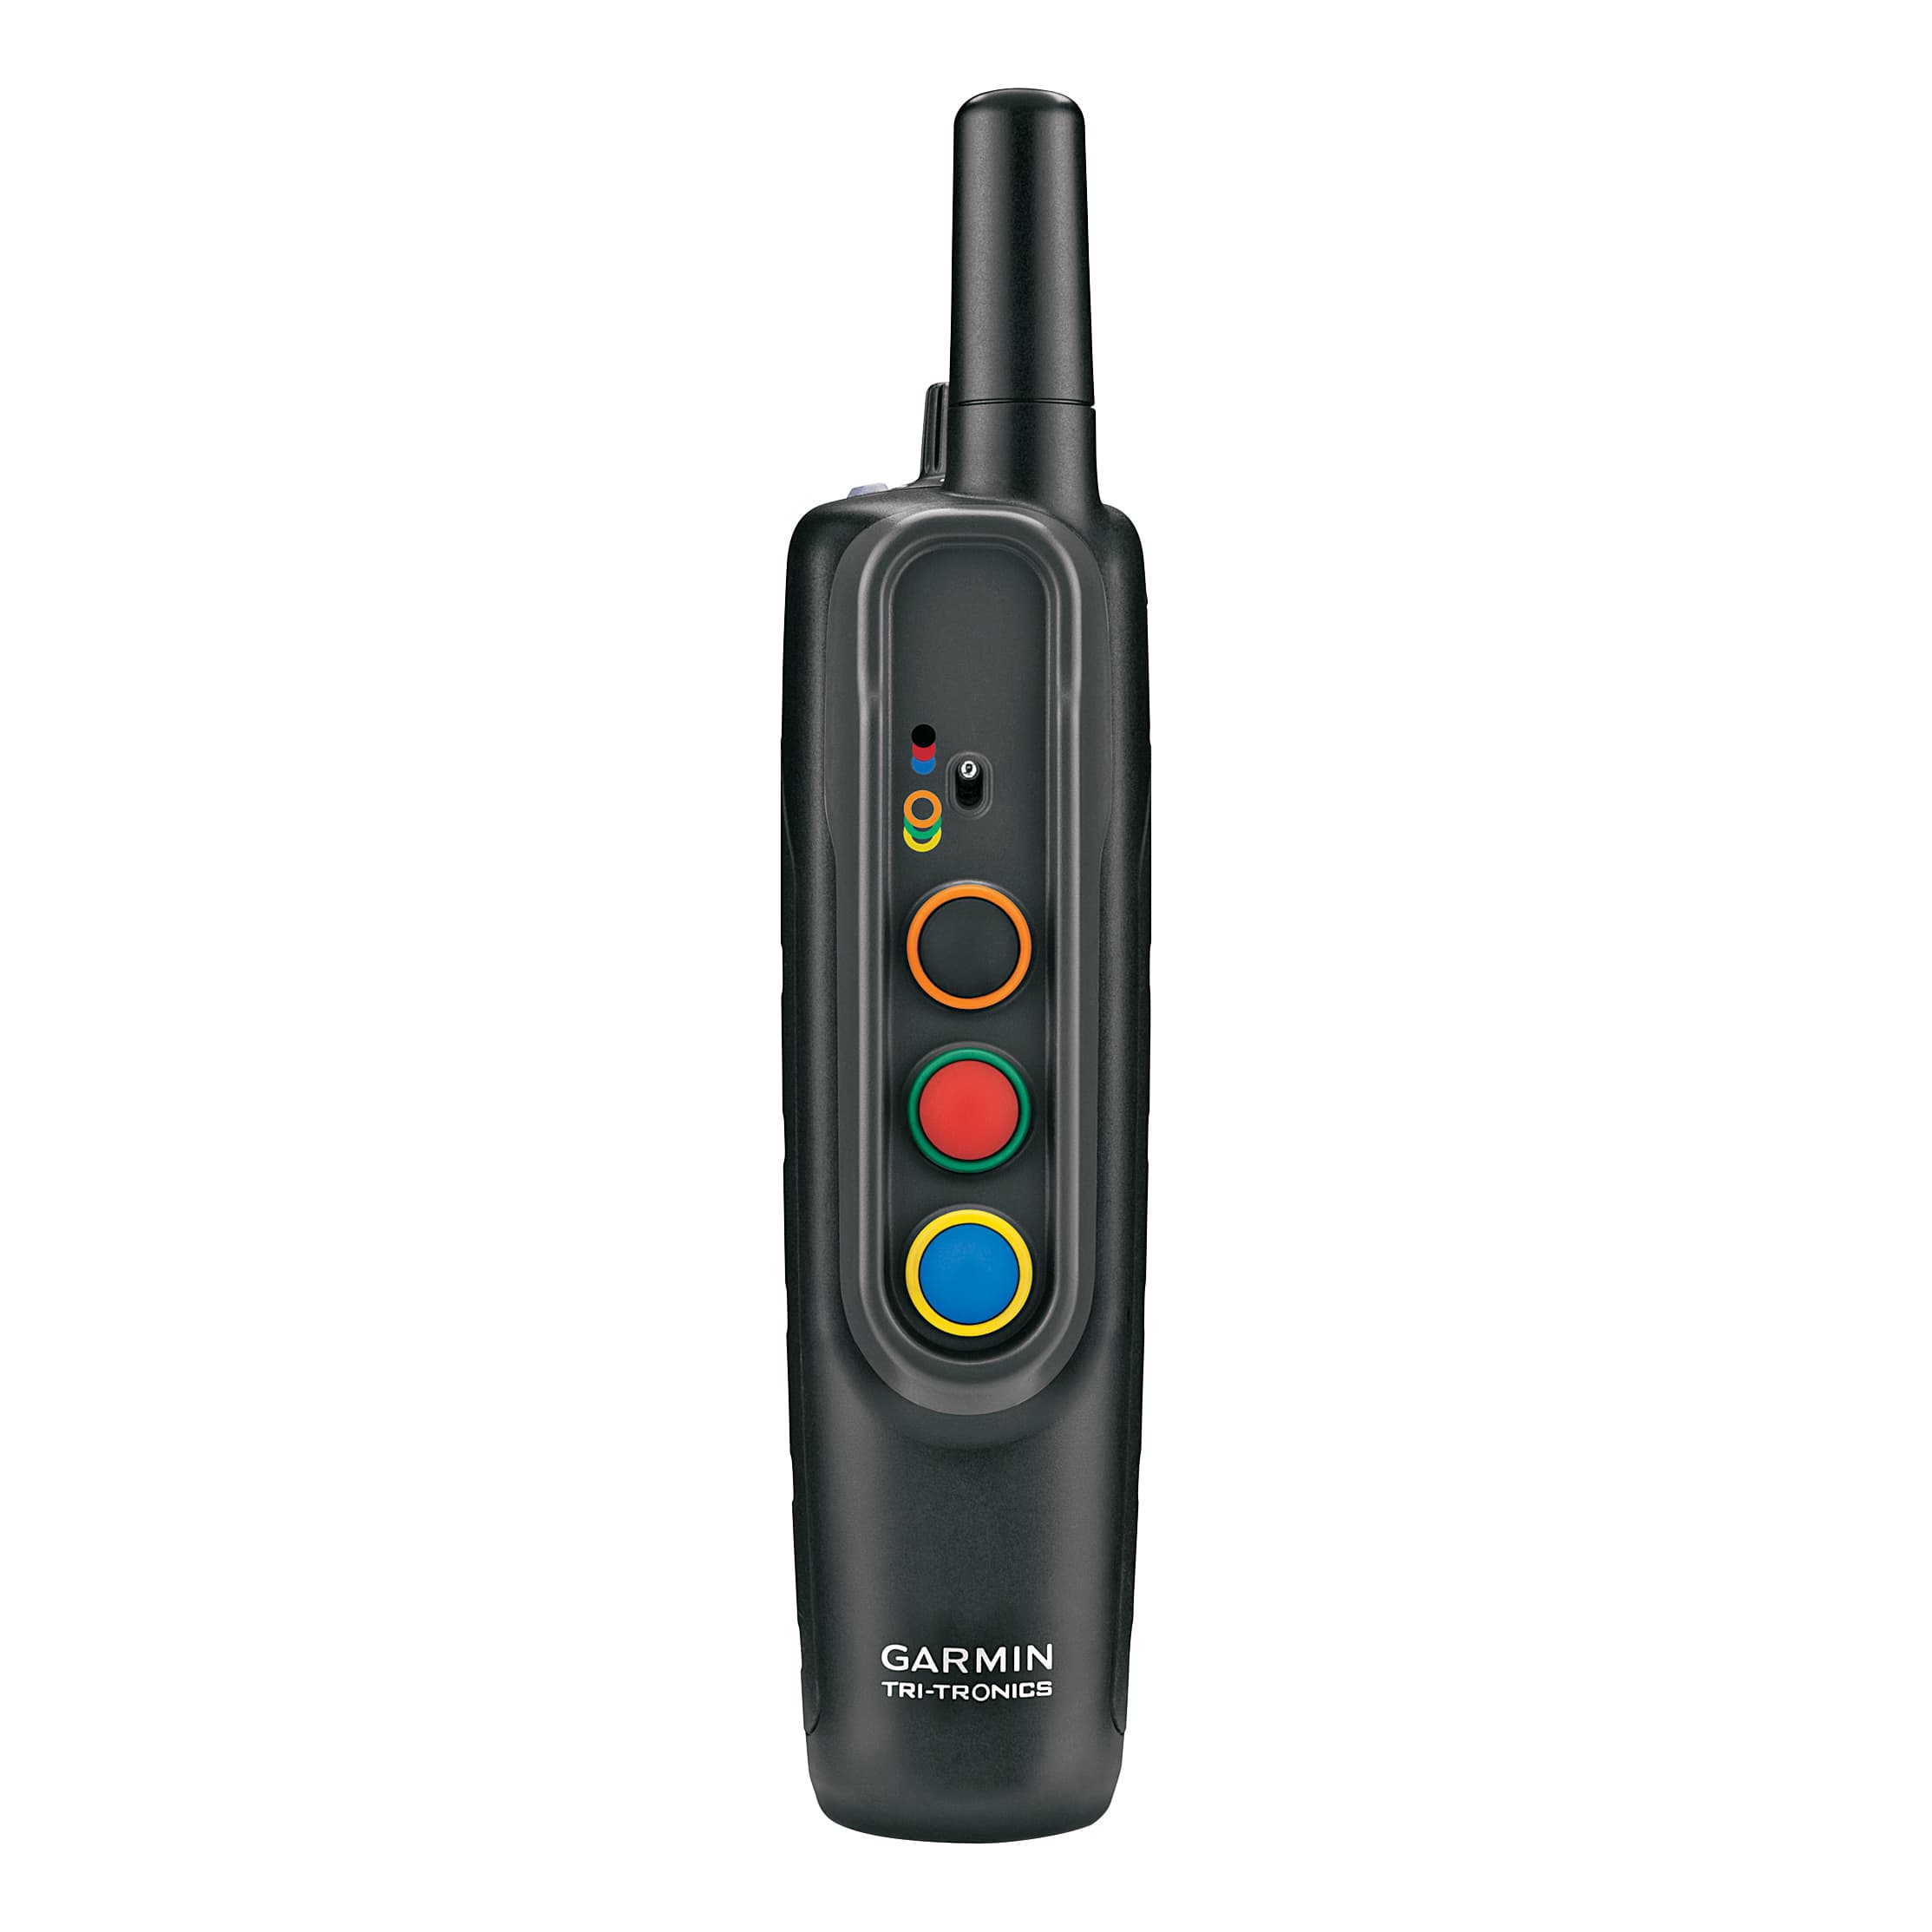 Garmin®/Tri-Tronics® Pro 70 Bundle - Remote